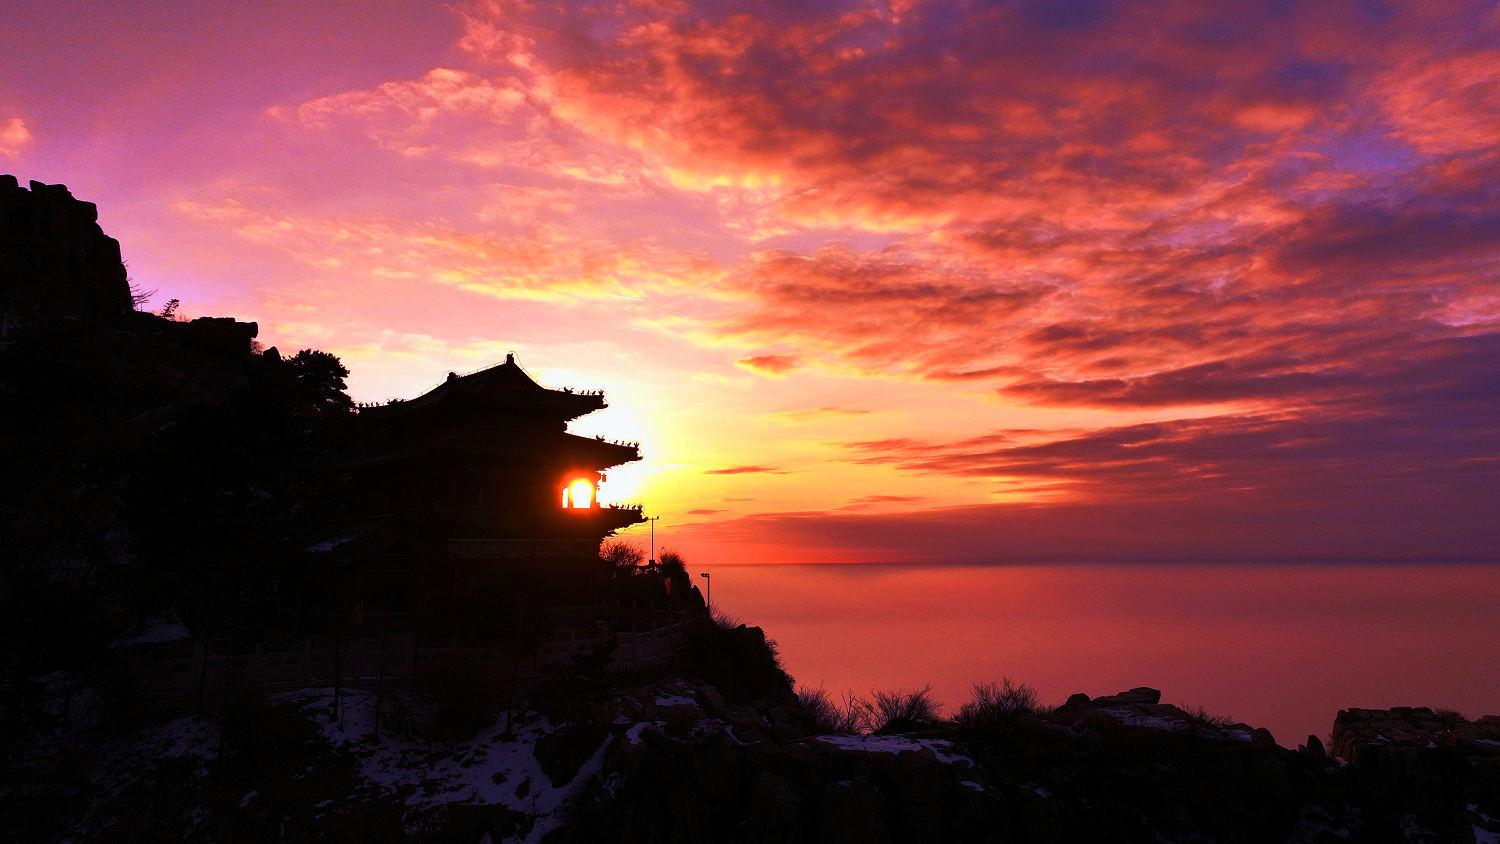 旭日东升,是泰山岱顶的奇观,也是大自然赋予人类最美的礼物